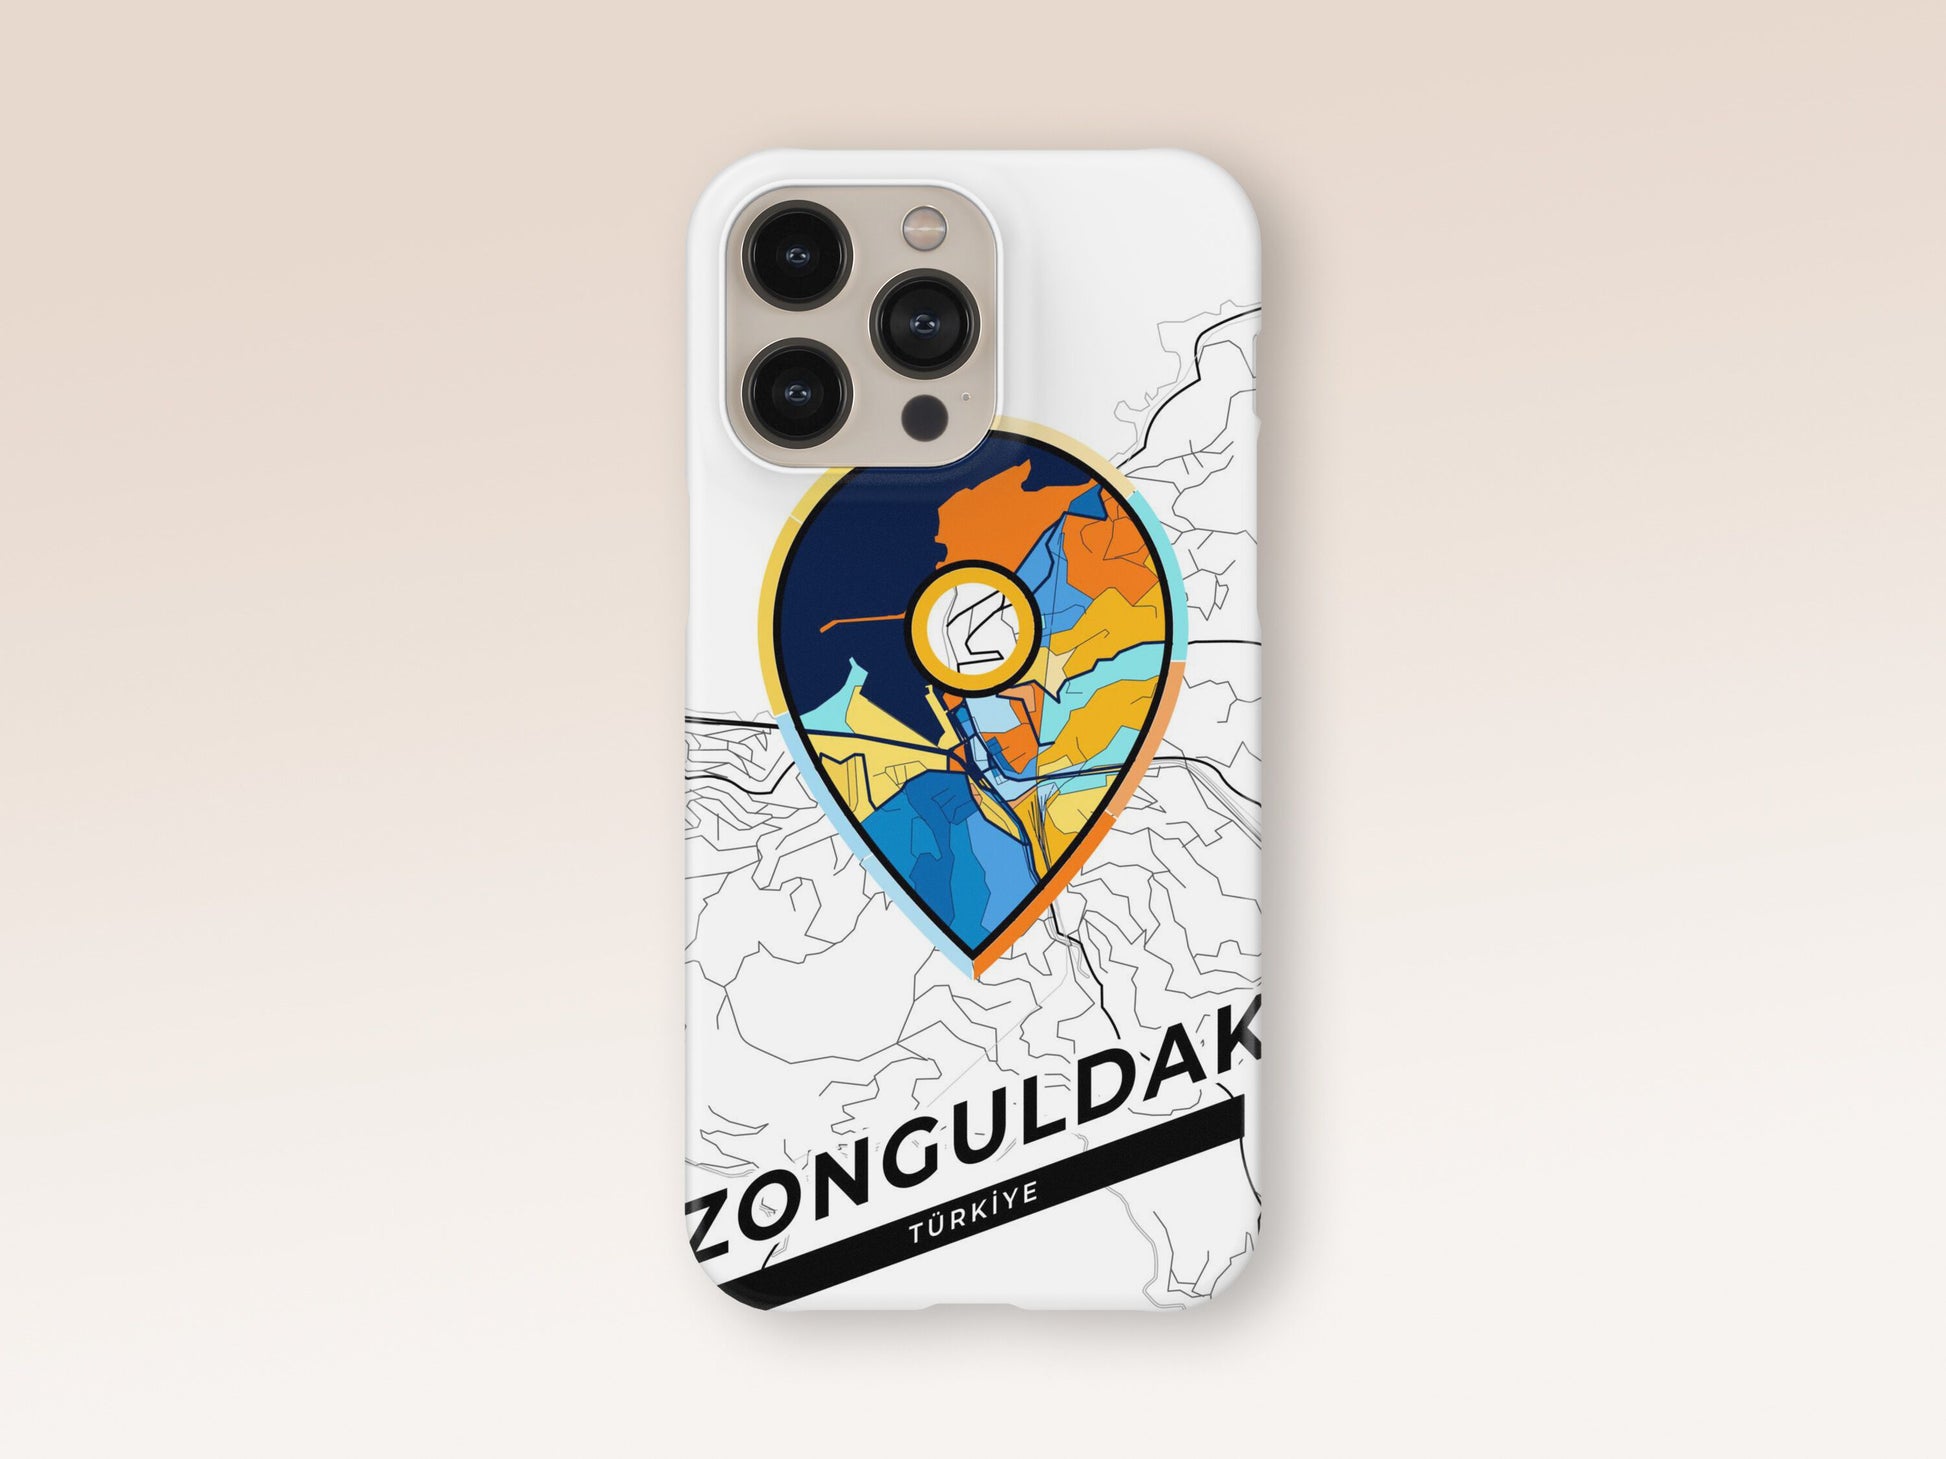 Zonguldak Turkey slim phone case with colorful icon 1